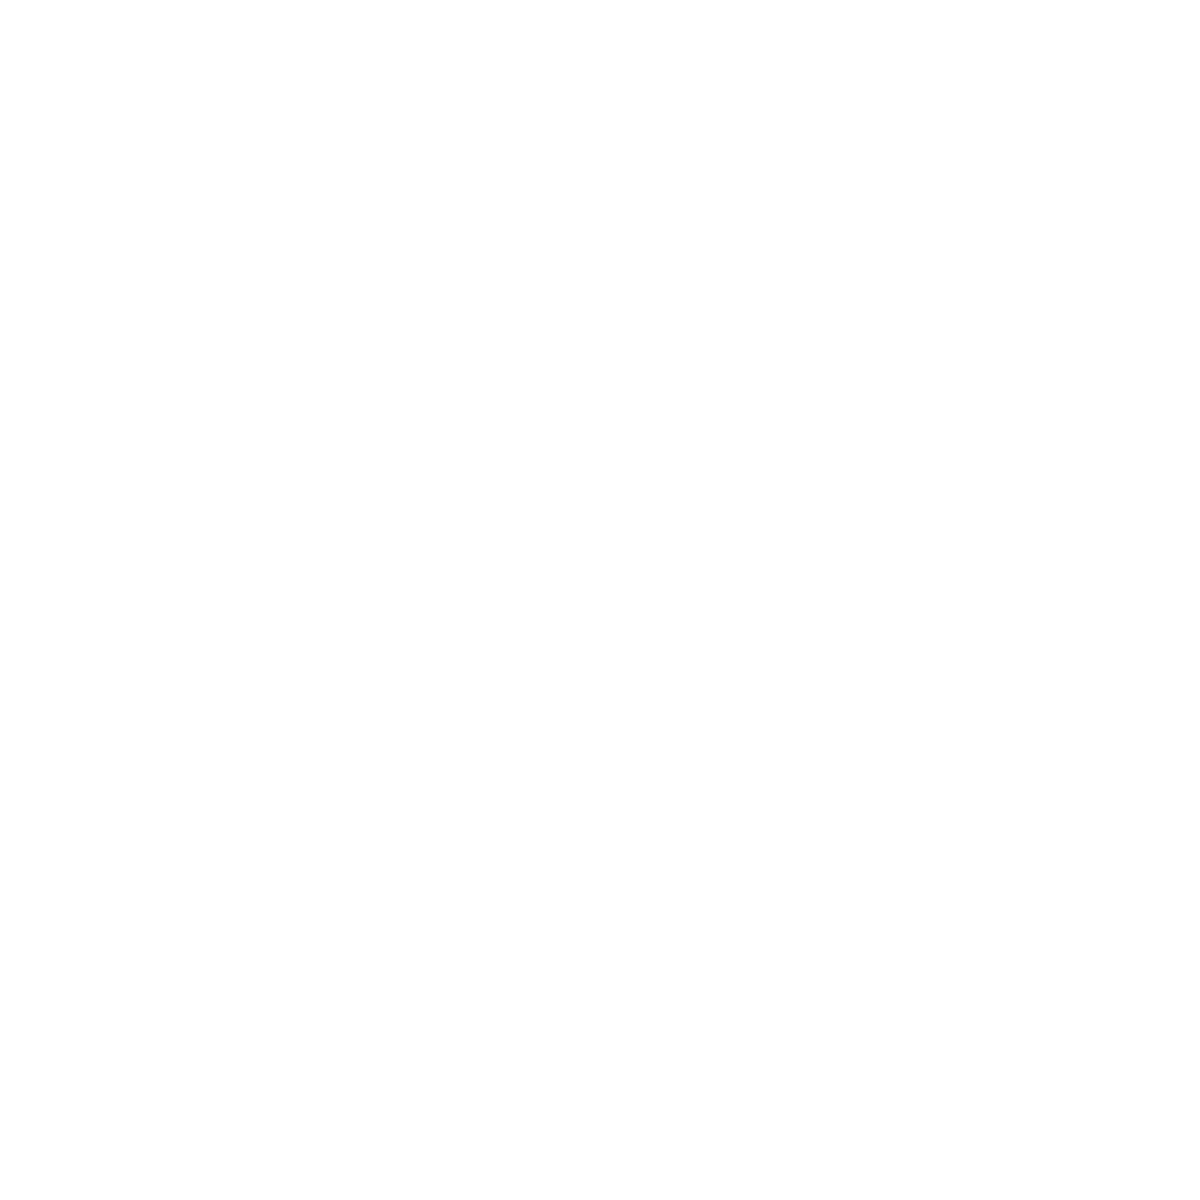 Weinberg Gonser Crest